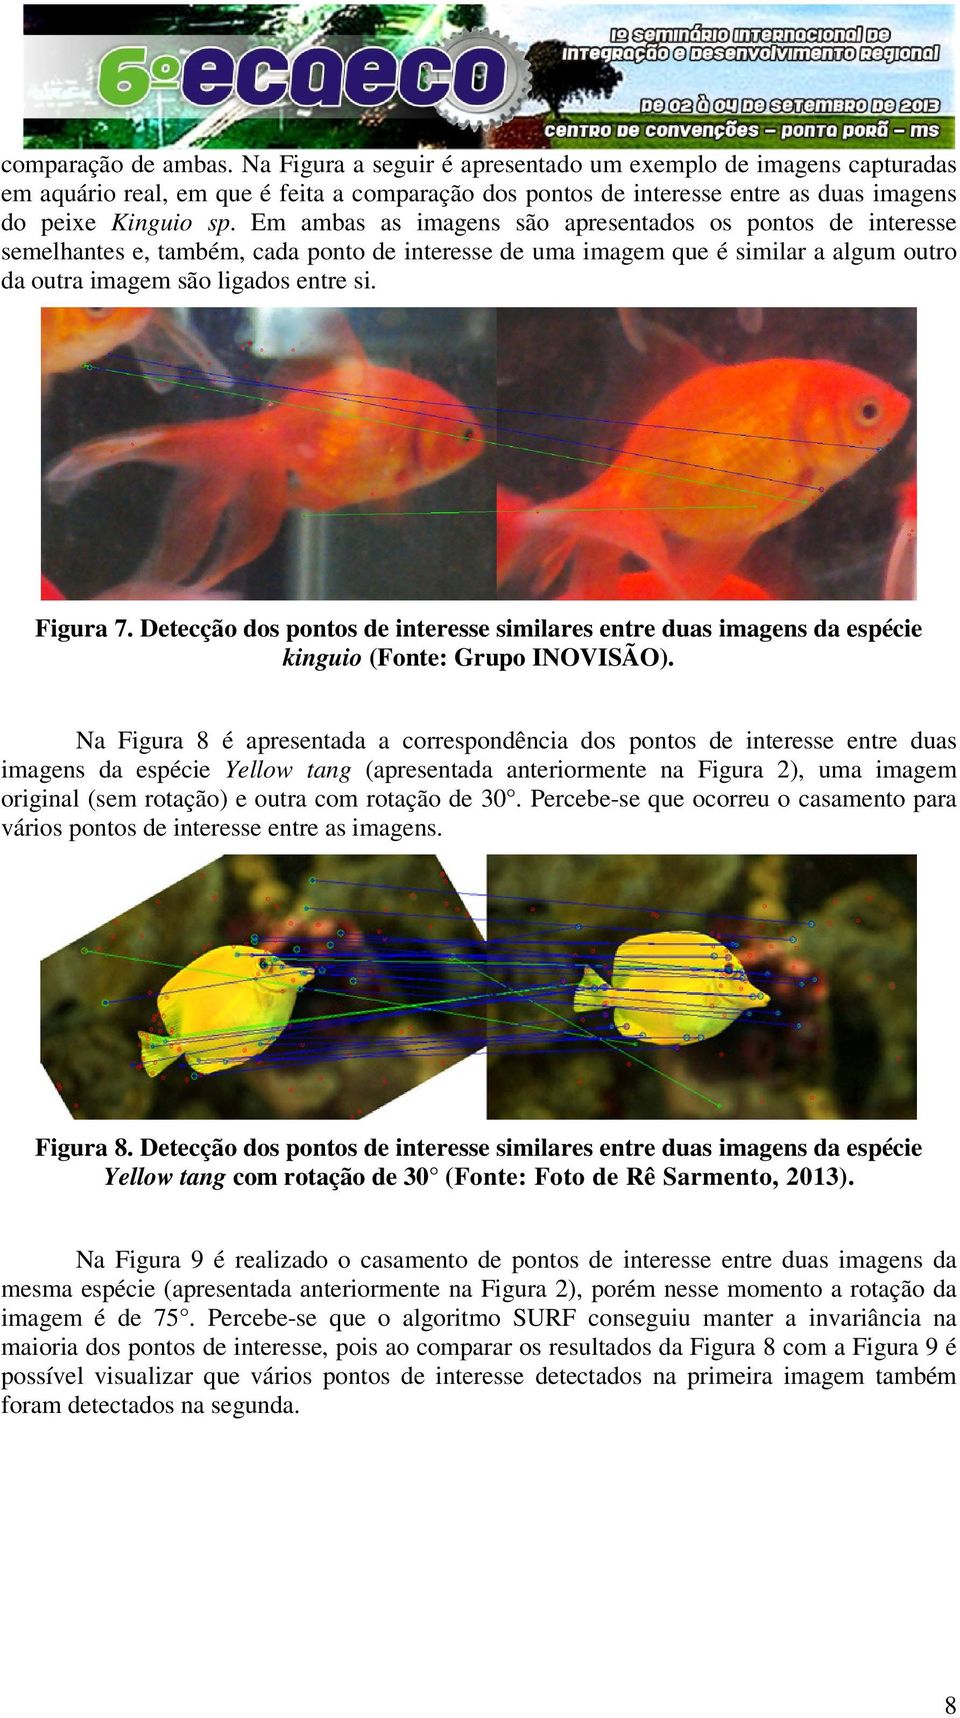 Detecção dos pontos de interesse similares entre duas imagens da espécie kinguio (Fonte: Grupo INOVISÃO).